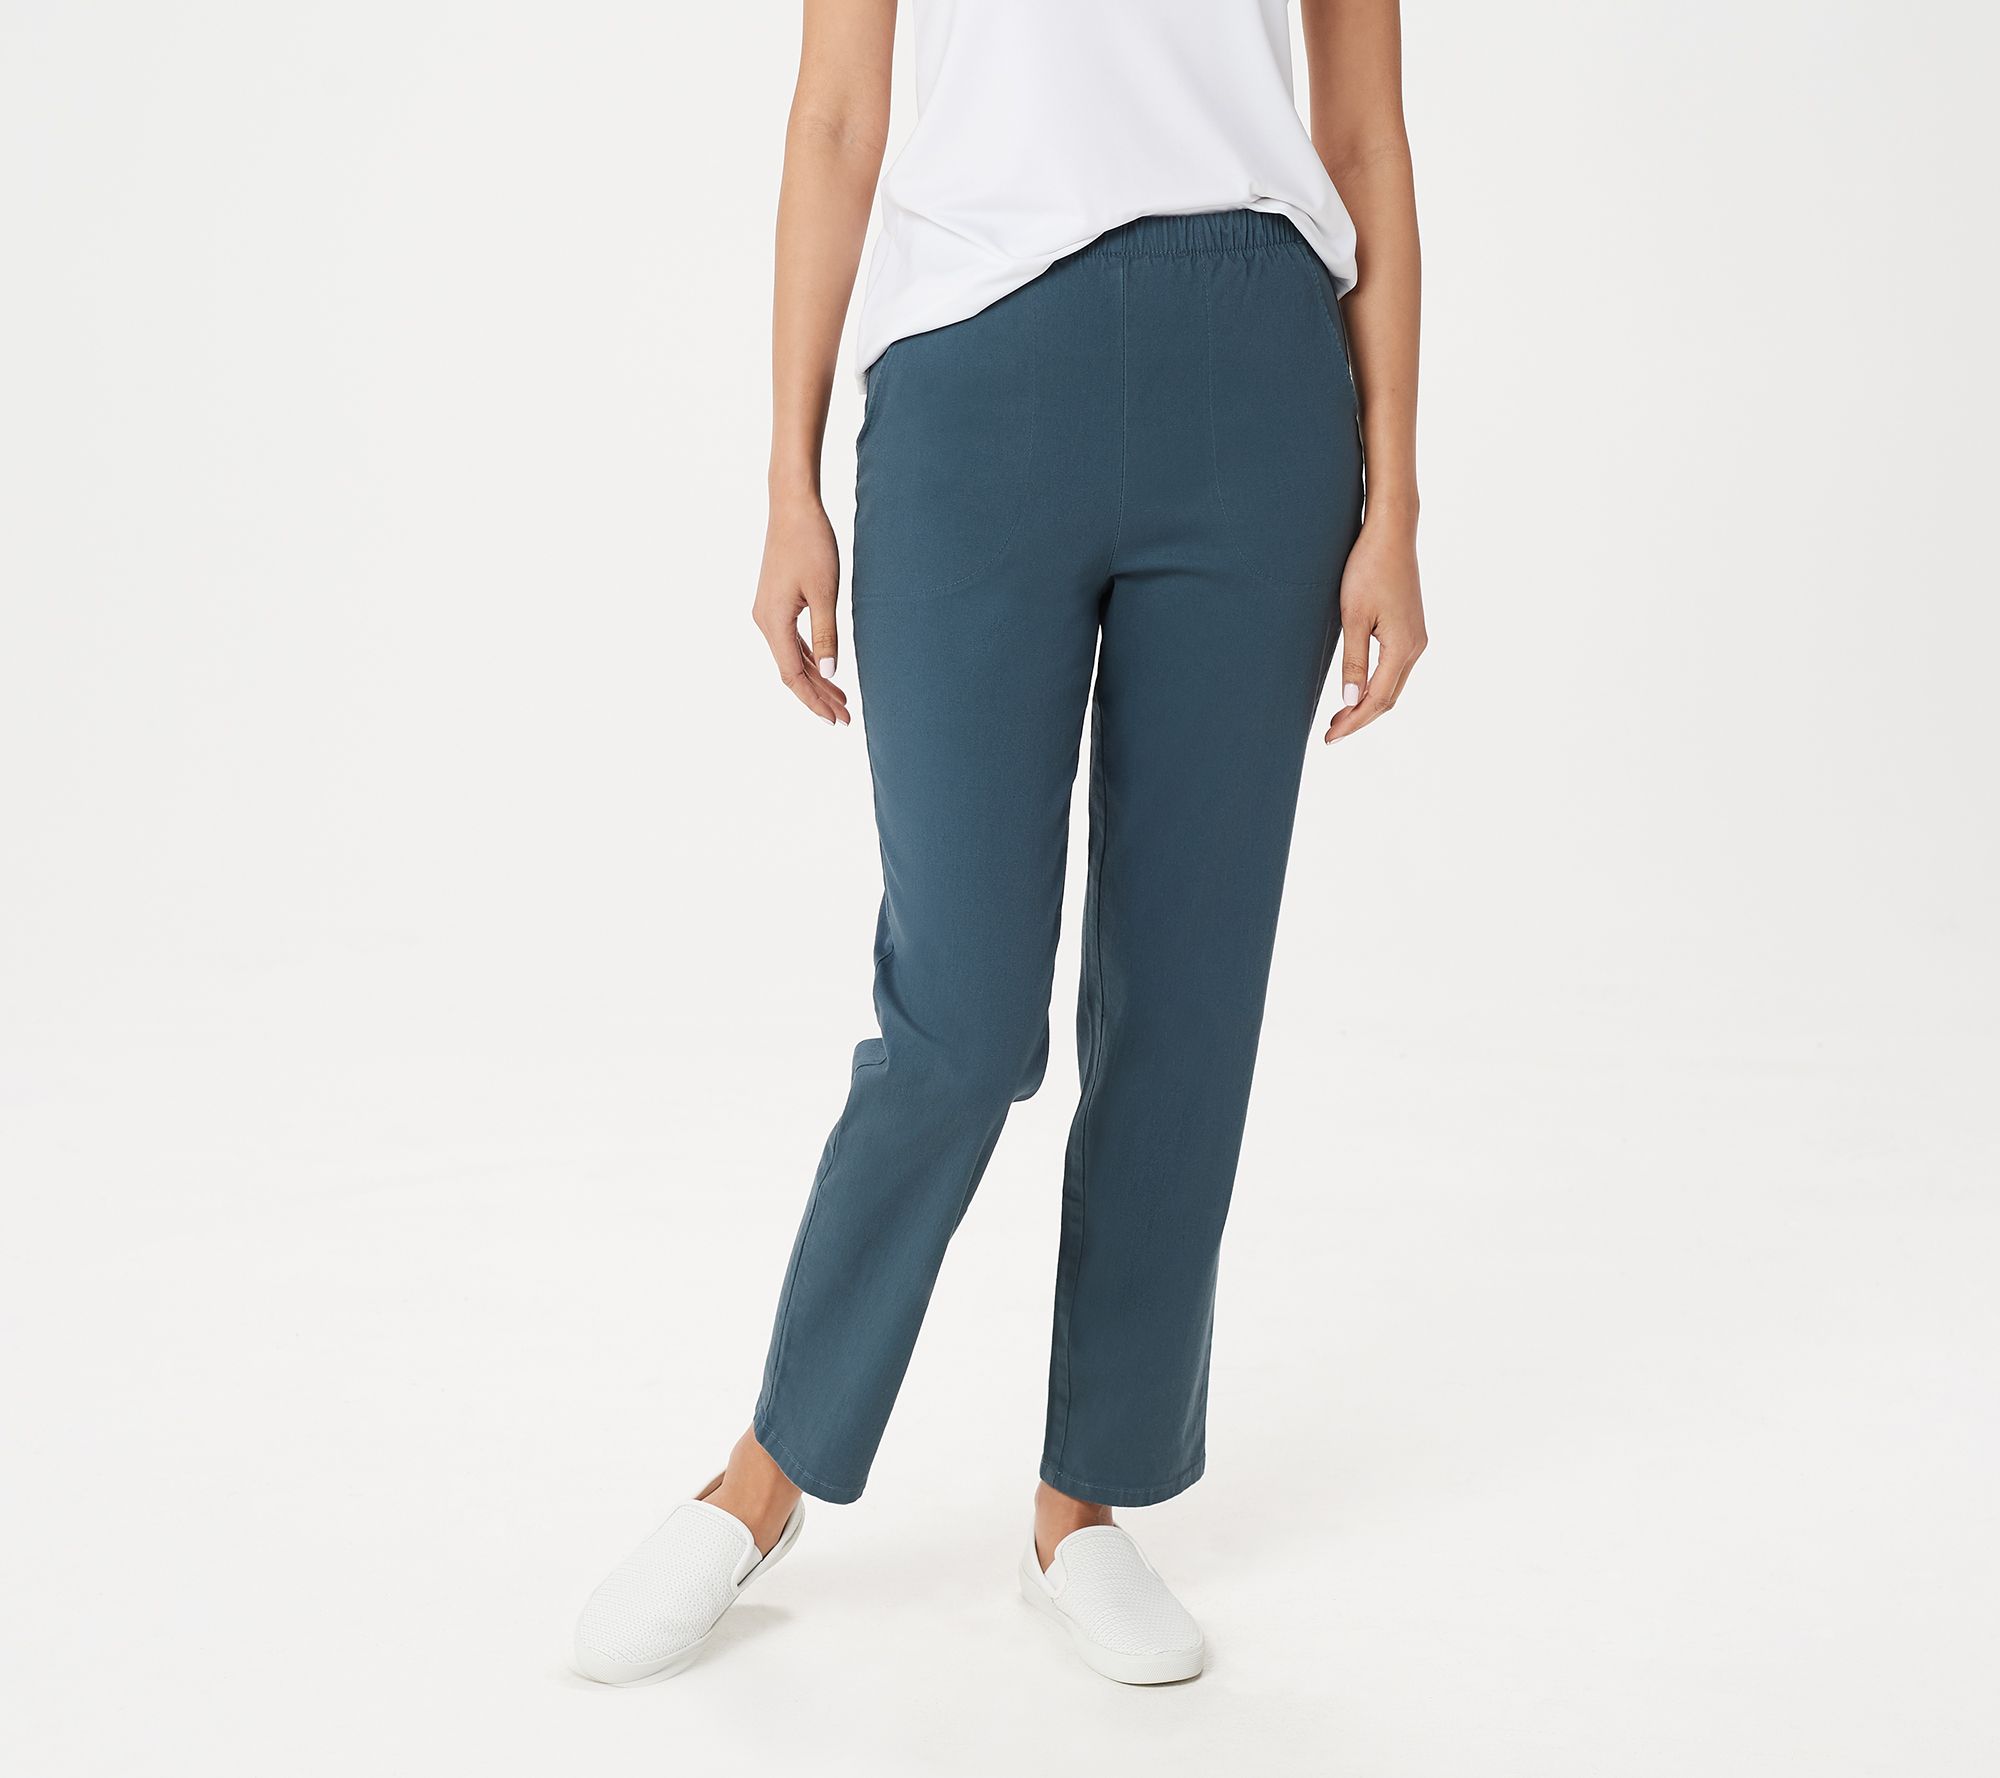 Denim & Co. Original Waist Stretch Petite Pants with Side Pockets - QVC.com